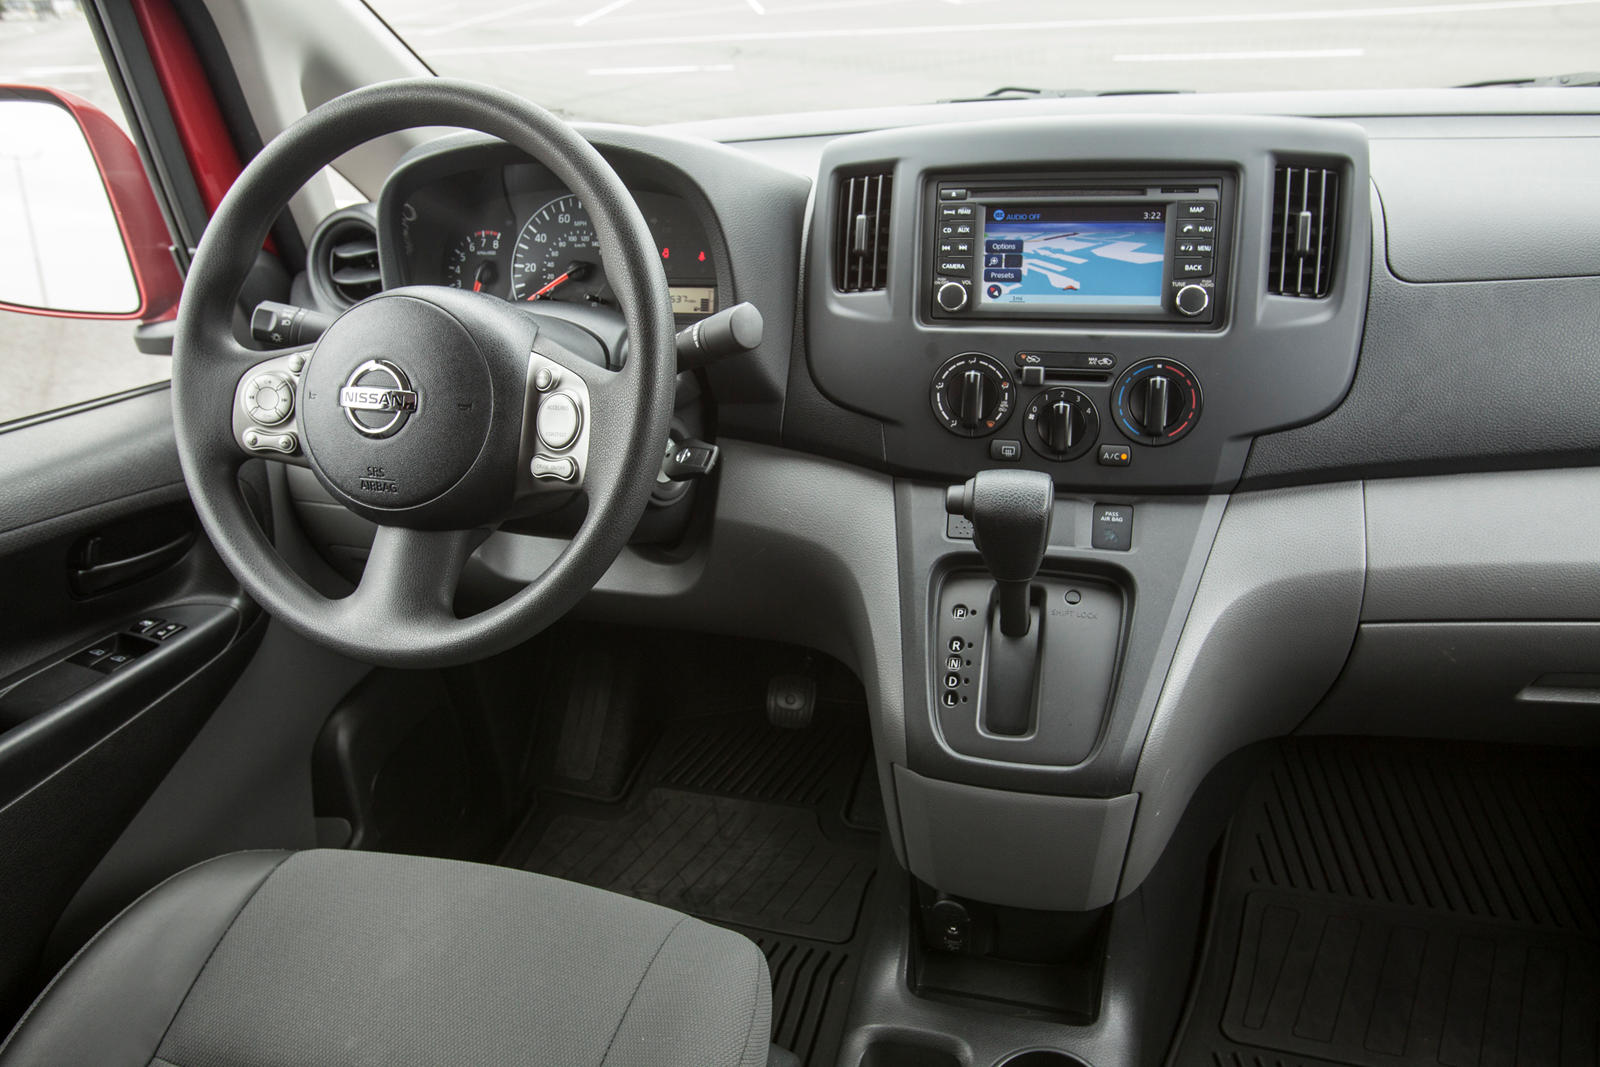 2014 Nissan NV200 Compact Cargo Interior Photos | CarBuzz